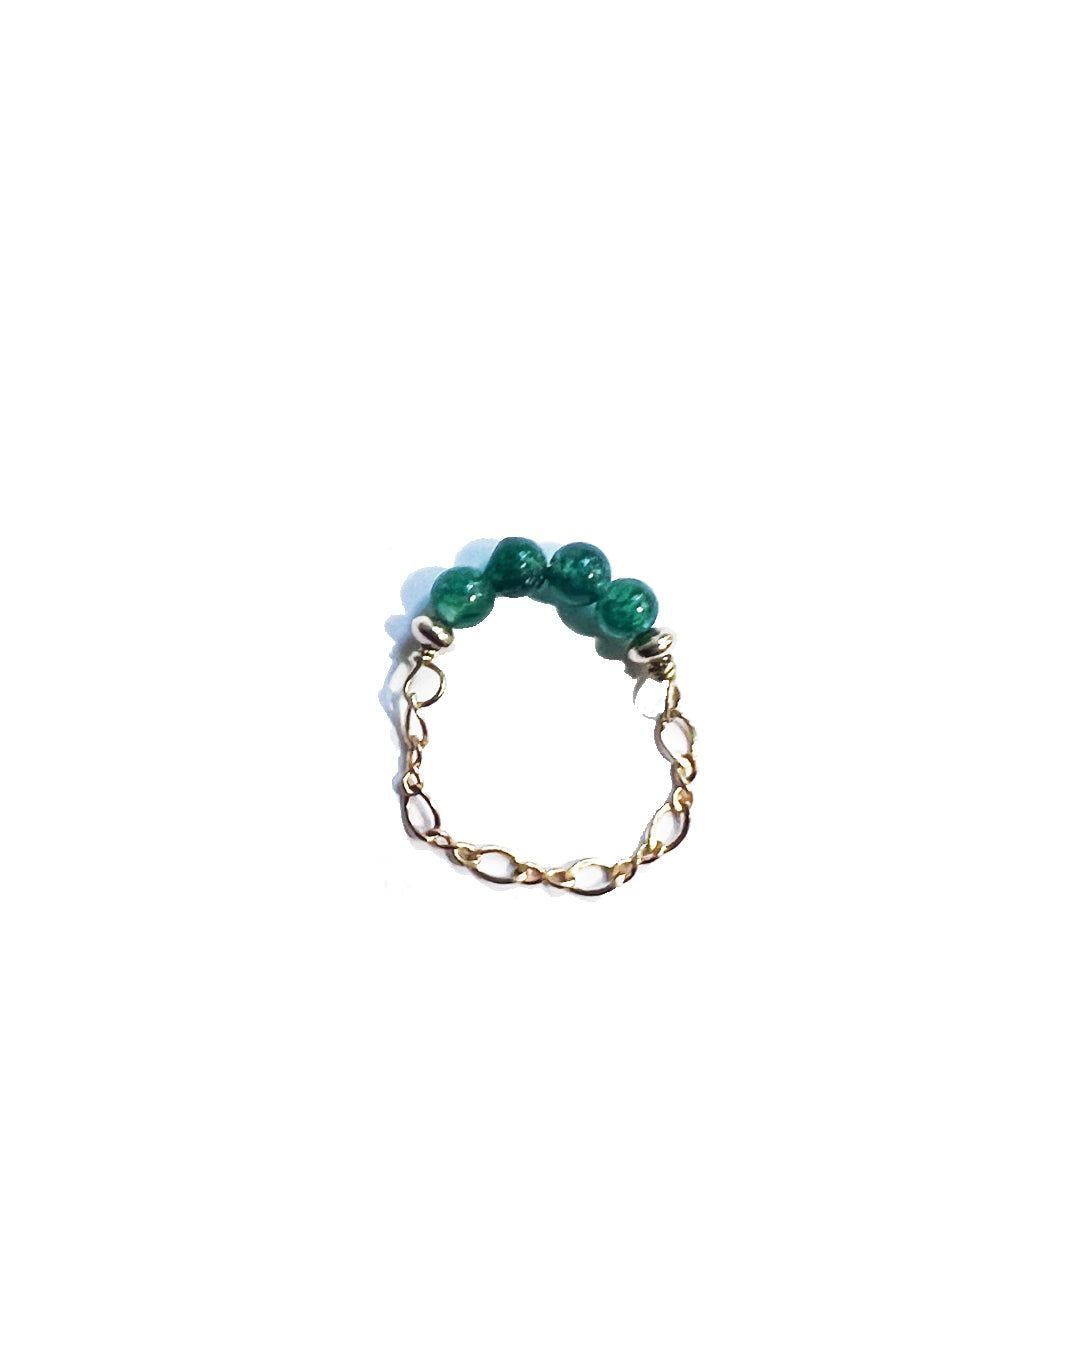 Semifine Jade Chain Ring | cukimber designs